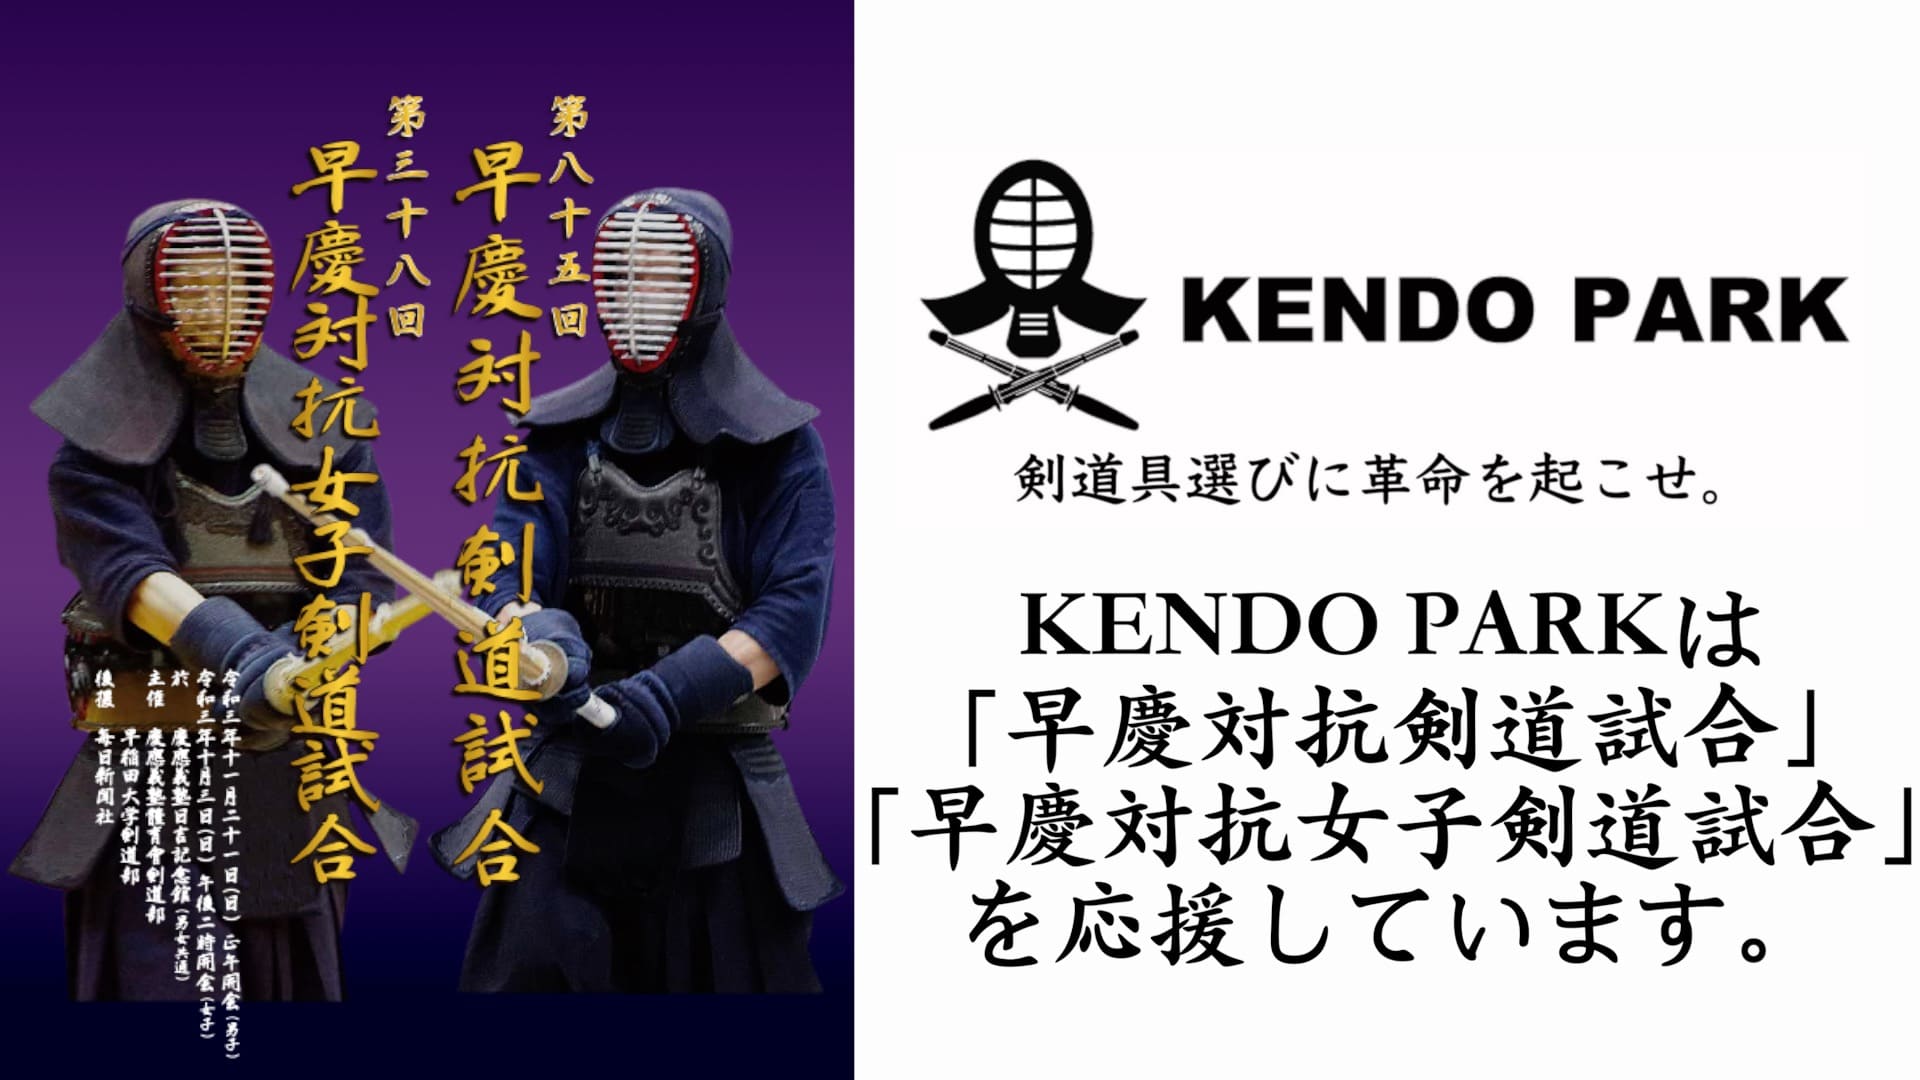 21年度 早慶対抗剣道試合 スポンサードのお知らせ 剣道を心から楽しむための情報メディア Kenjoy ケンジョイ